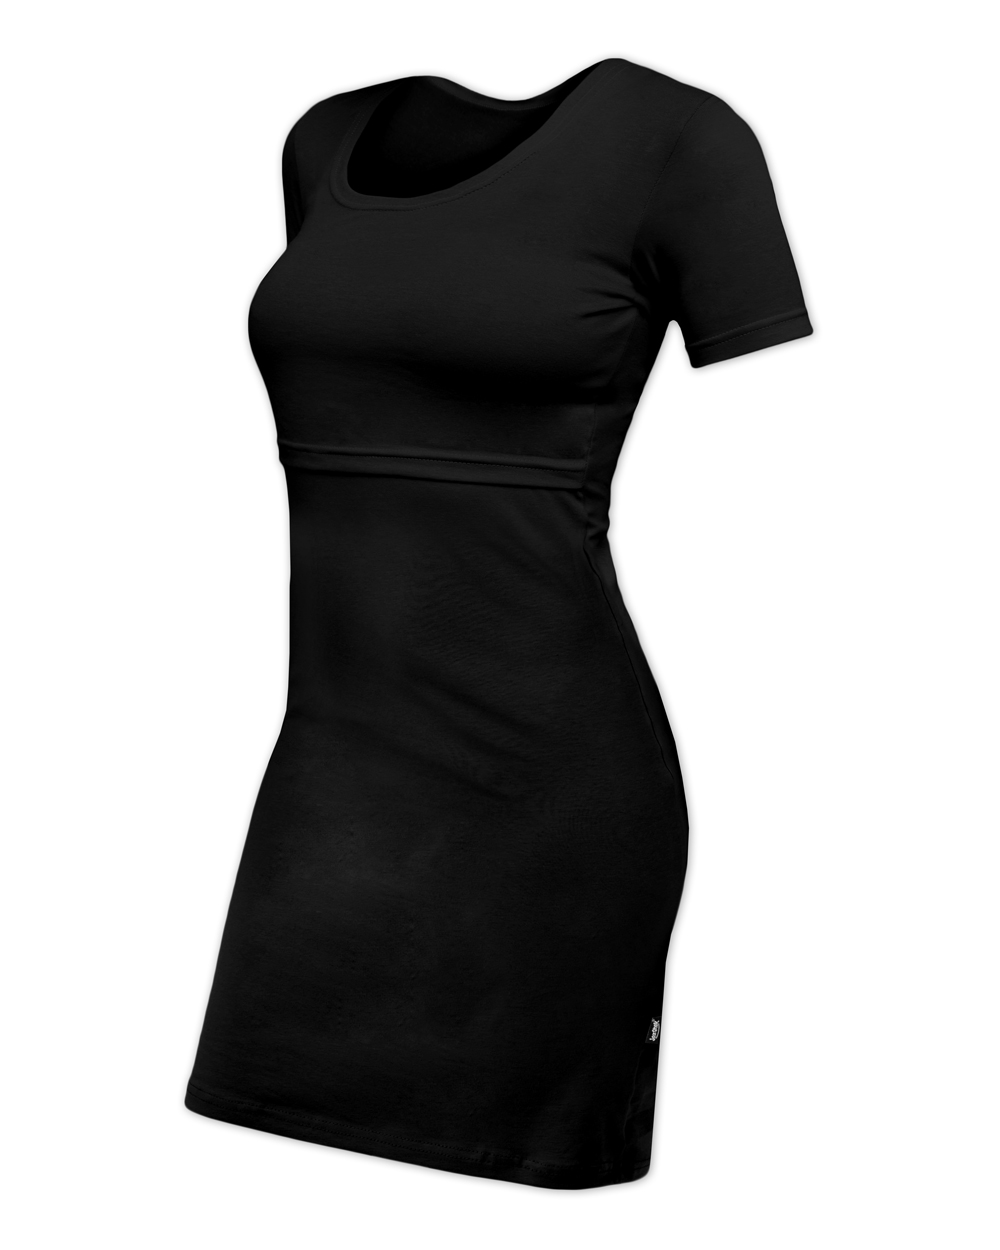 Kojicí šaty ELENA, krátký rukáv, černé